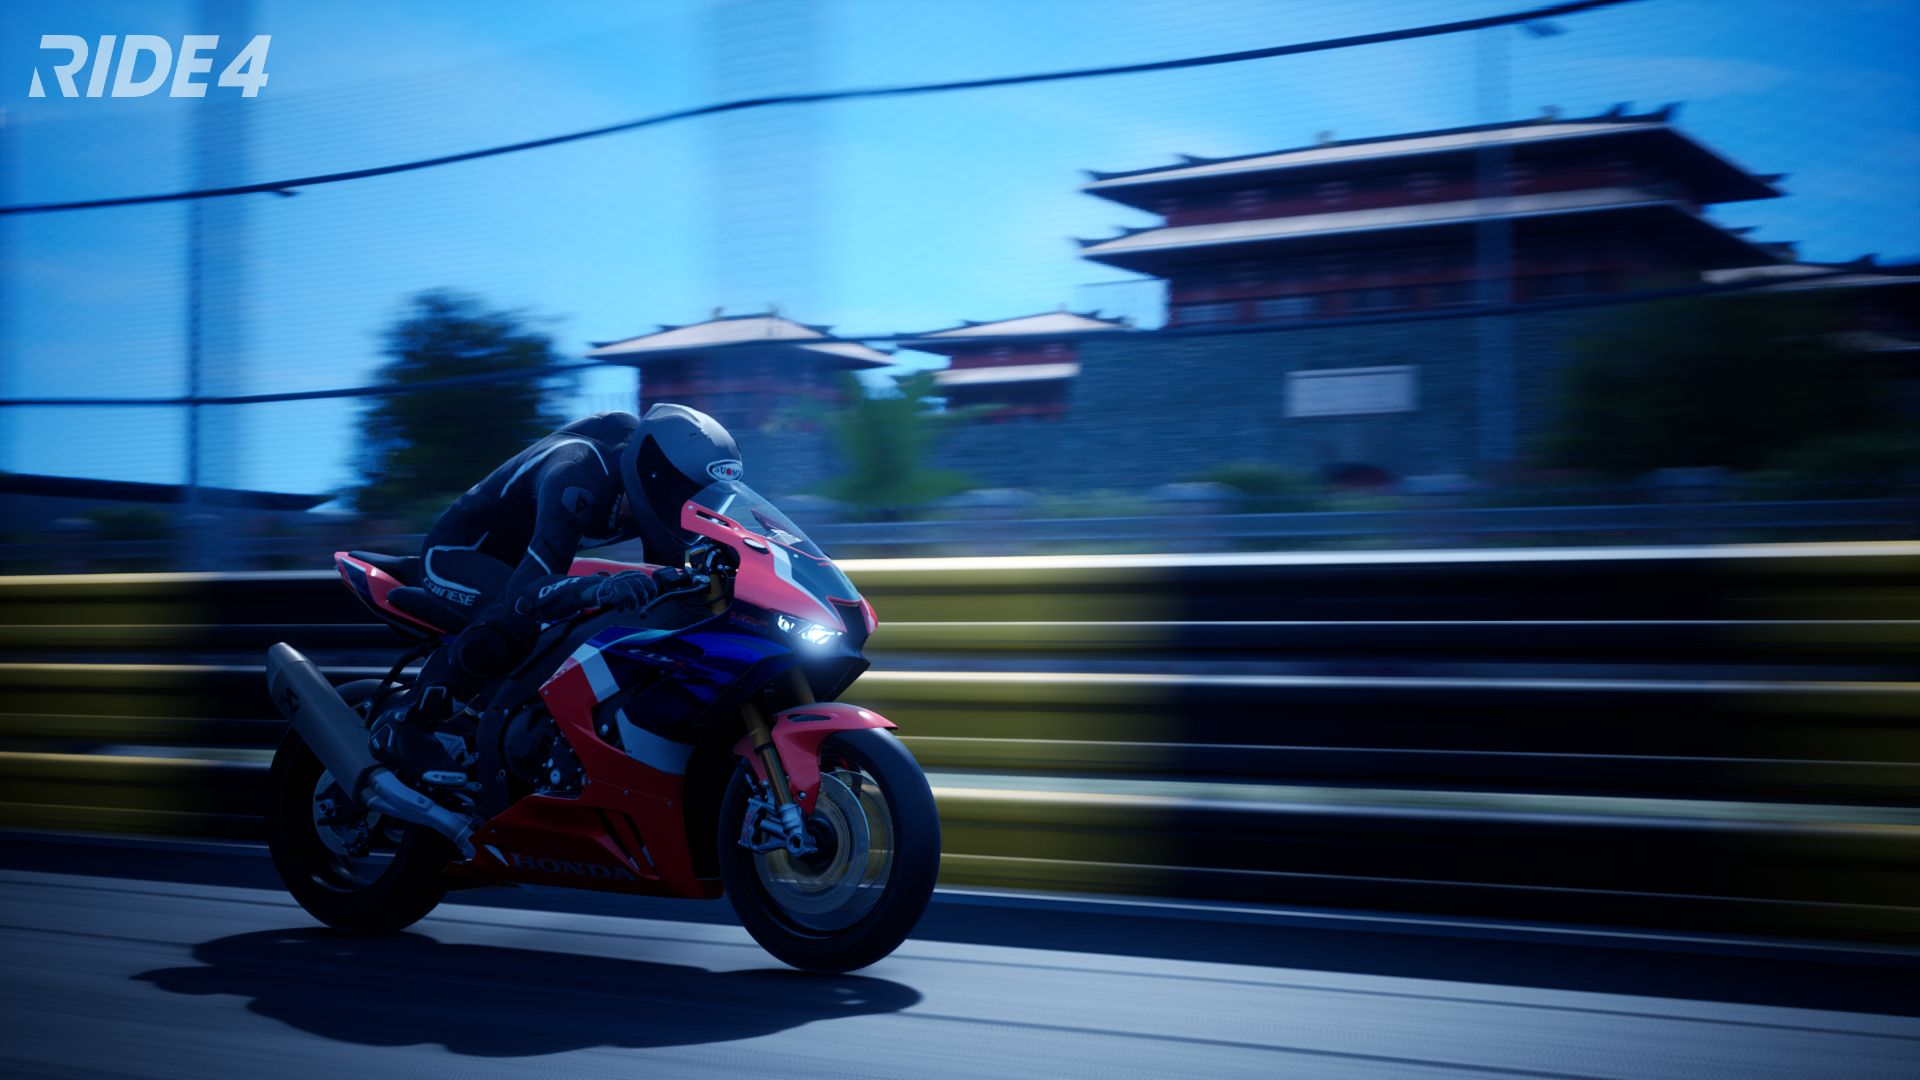 General 1920x1080 motorcycle Racing Motorcycle vehicle headlights blurred blurry background race tracks helmet Honda Japanese motorcycles video games